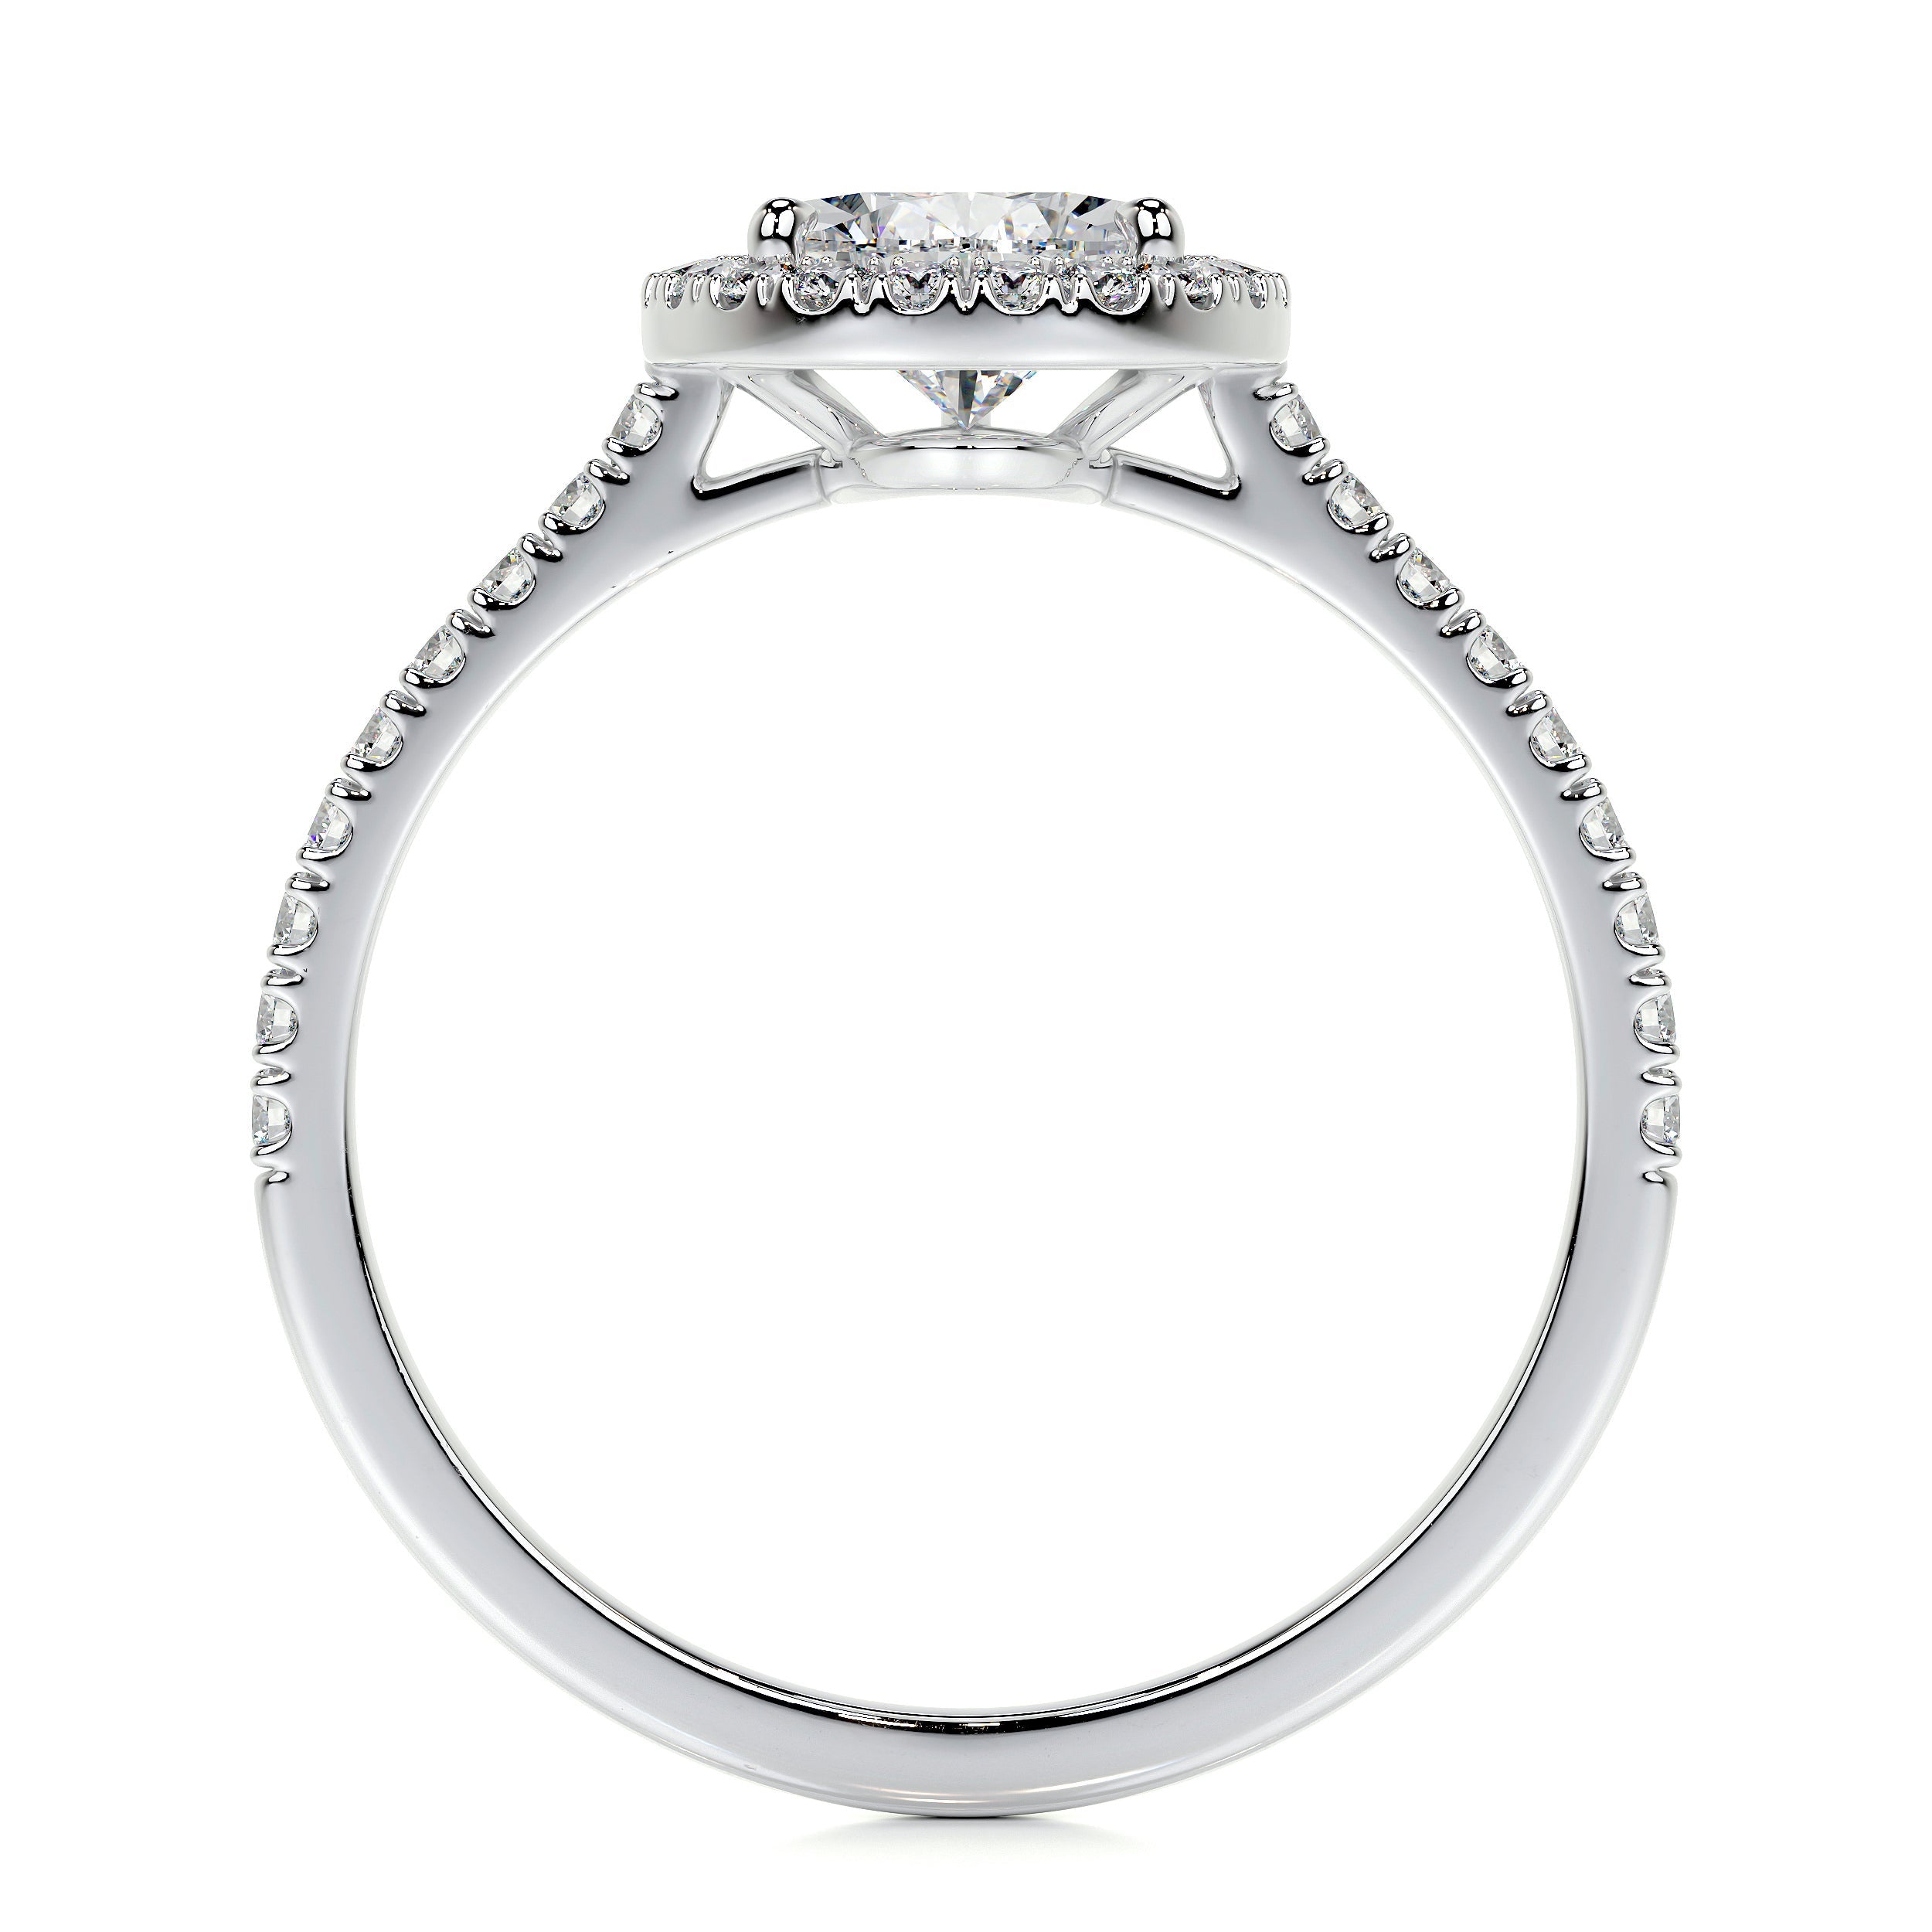 Sophia Lab Grown Diamond Ring   (2 Carat) -14K White Gold